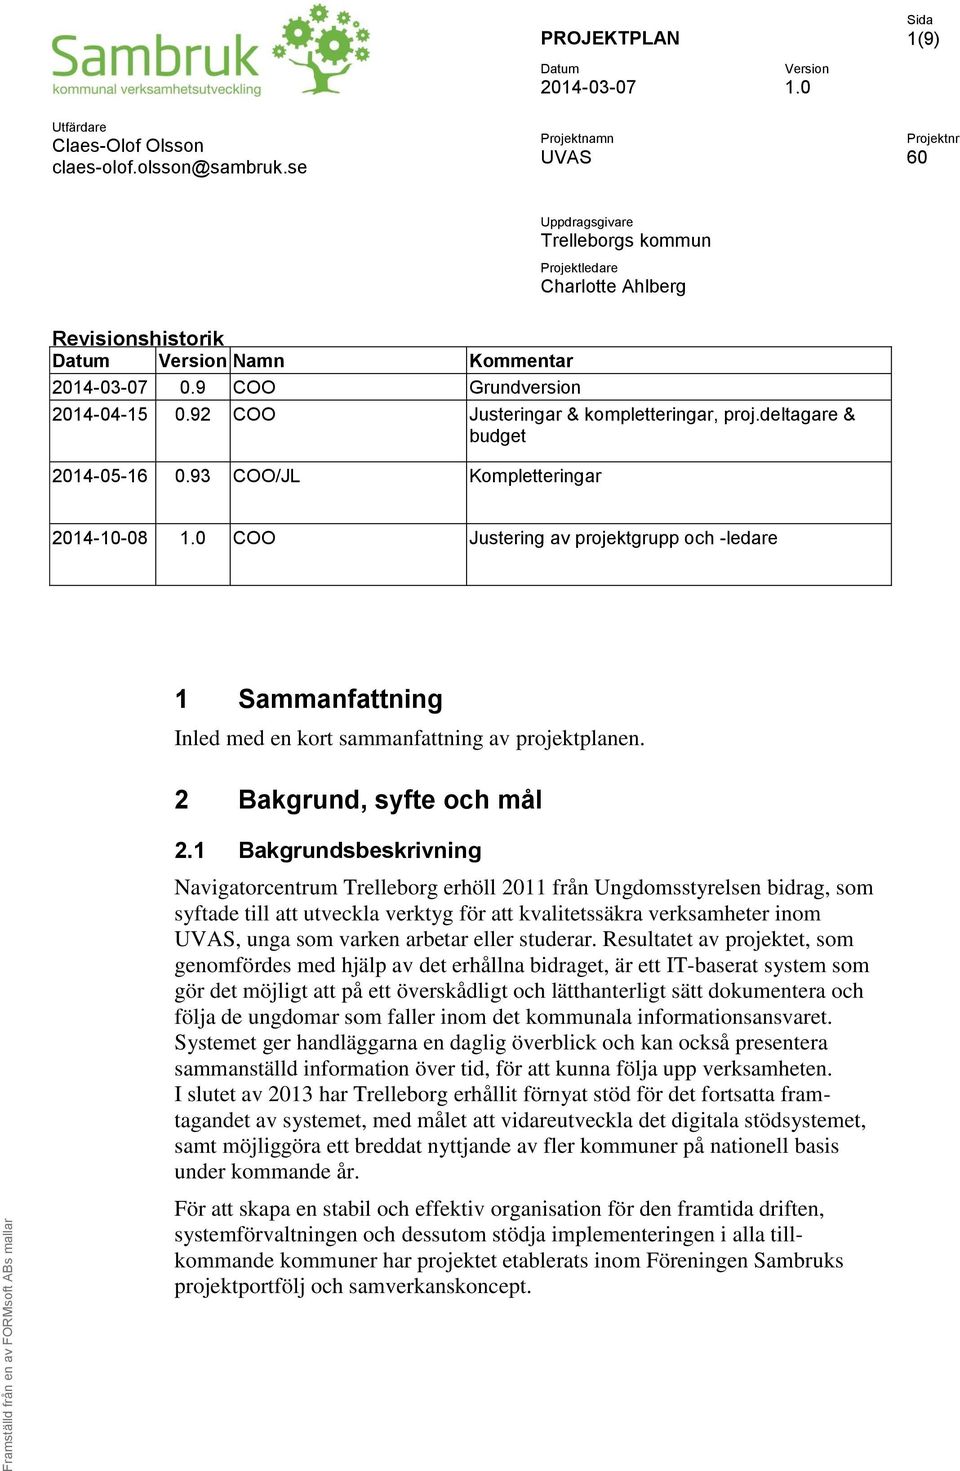 92 COO Justeringar & kompletteringar, proj.deltagare & budget 2014-05-16 0.